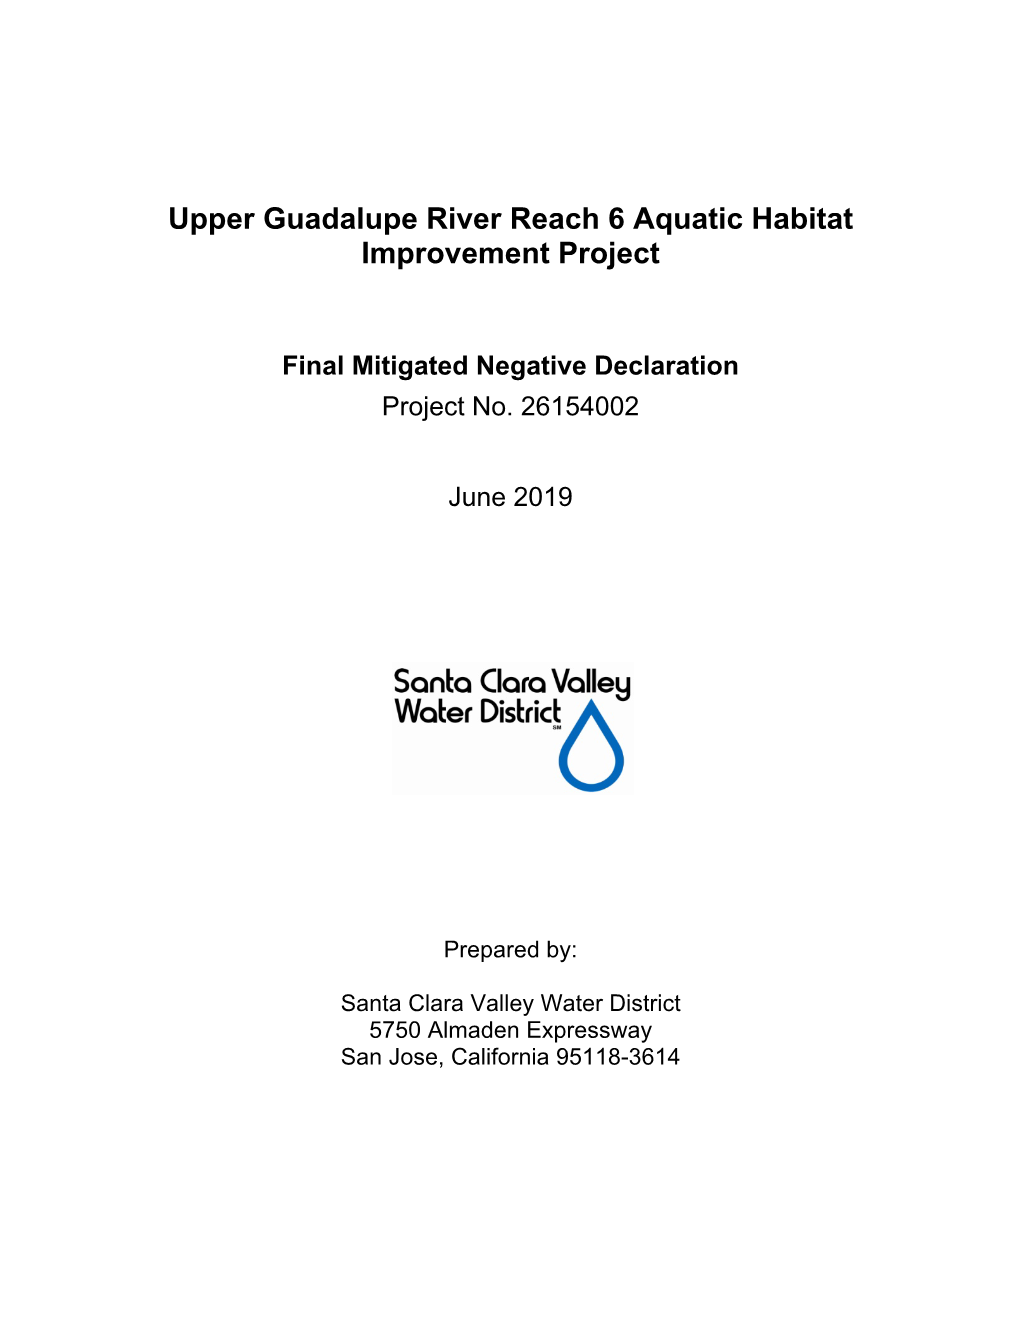 Upper Guadalupe River Reach 6 Aquatic Habitat Improvement Project